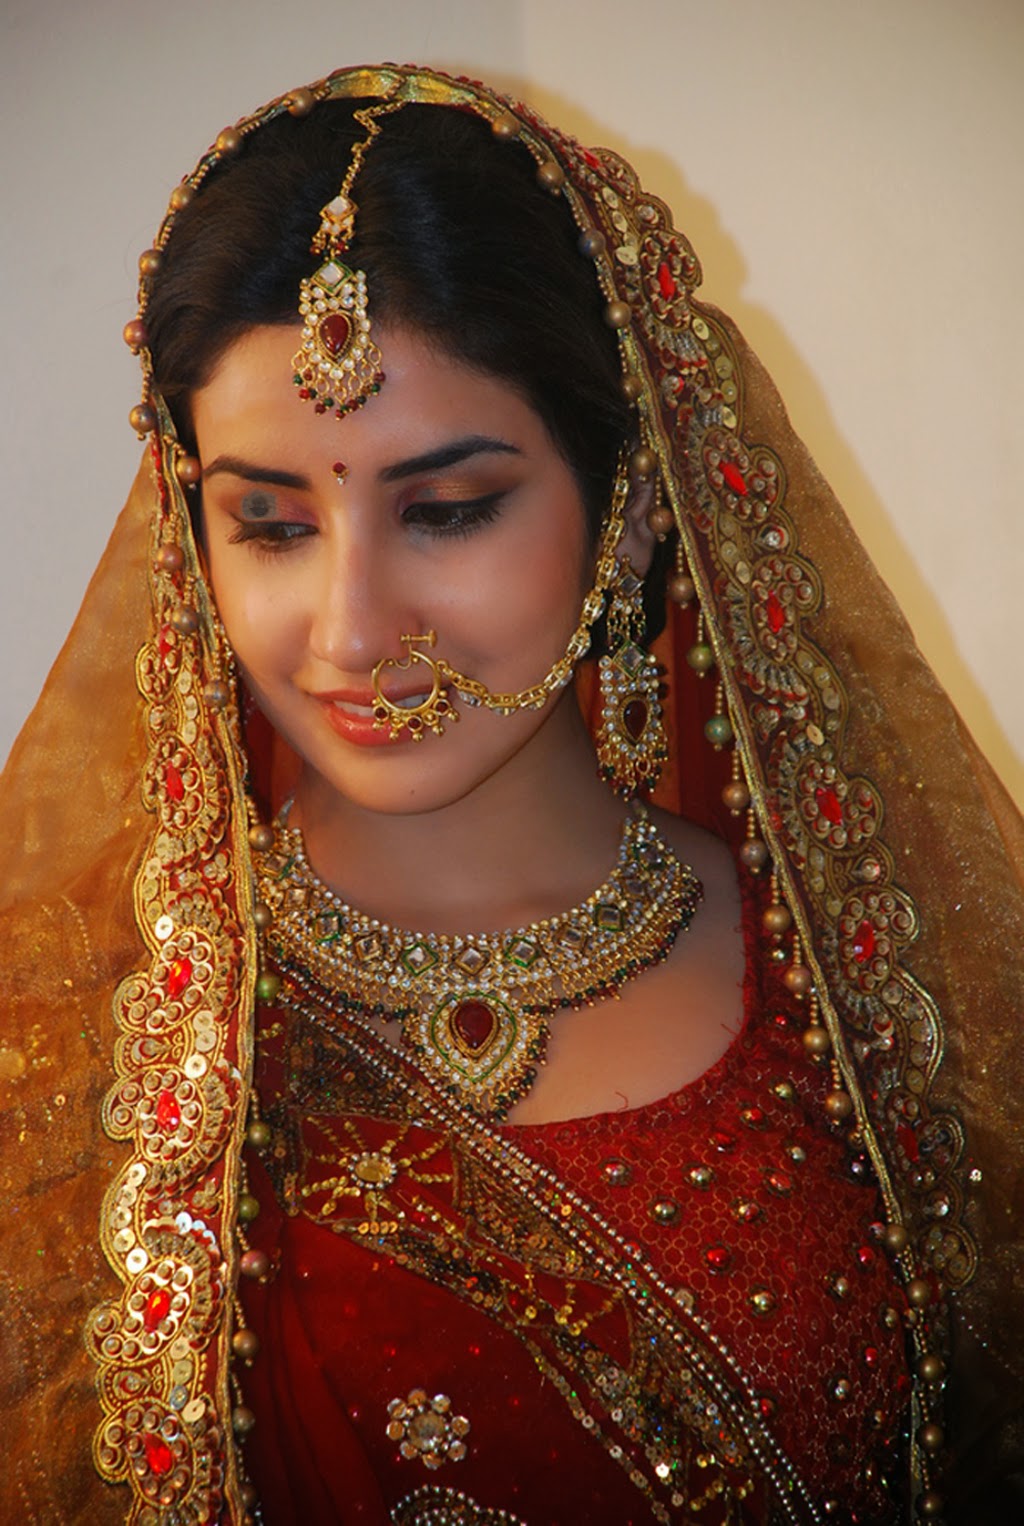 fond d'écran parul nom,la mariée,tradition,sari,relooking,robe de mariée